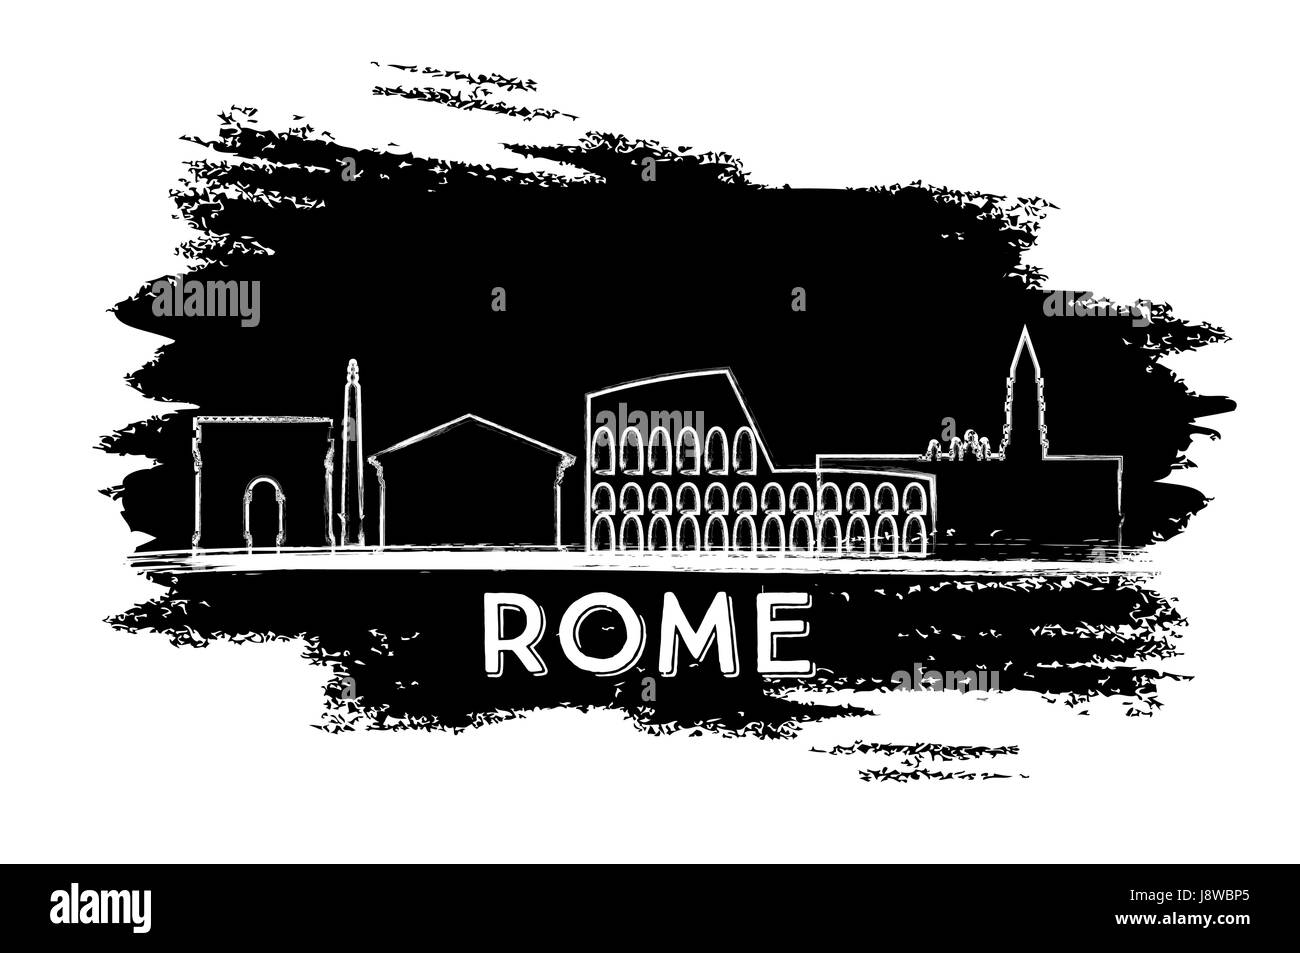 Les toits de Rome. silhouette esquisse dessinée à la main. vector illustration. Les voyages d'affaires et tourisme concept avec l'architecture historique. Illustration de Vecteur